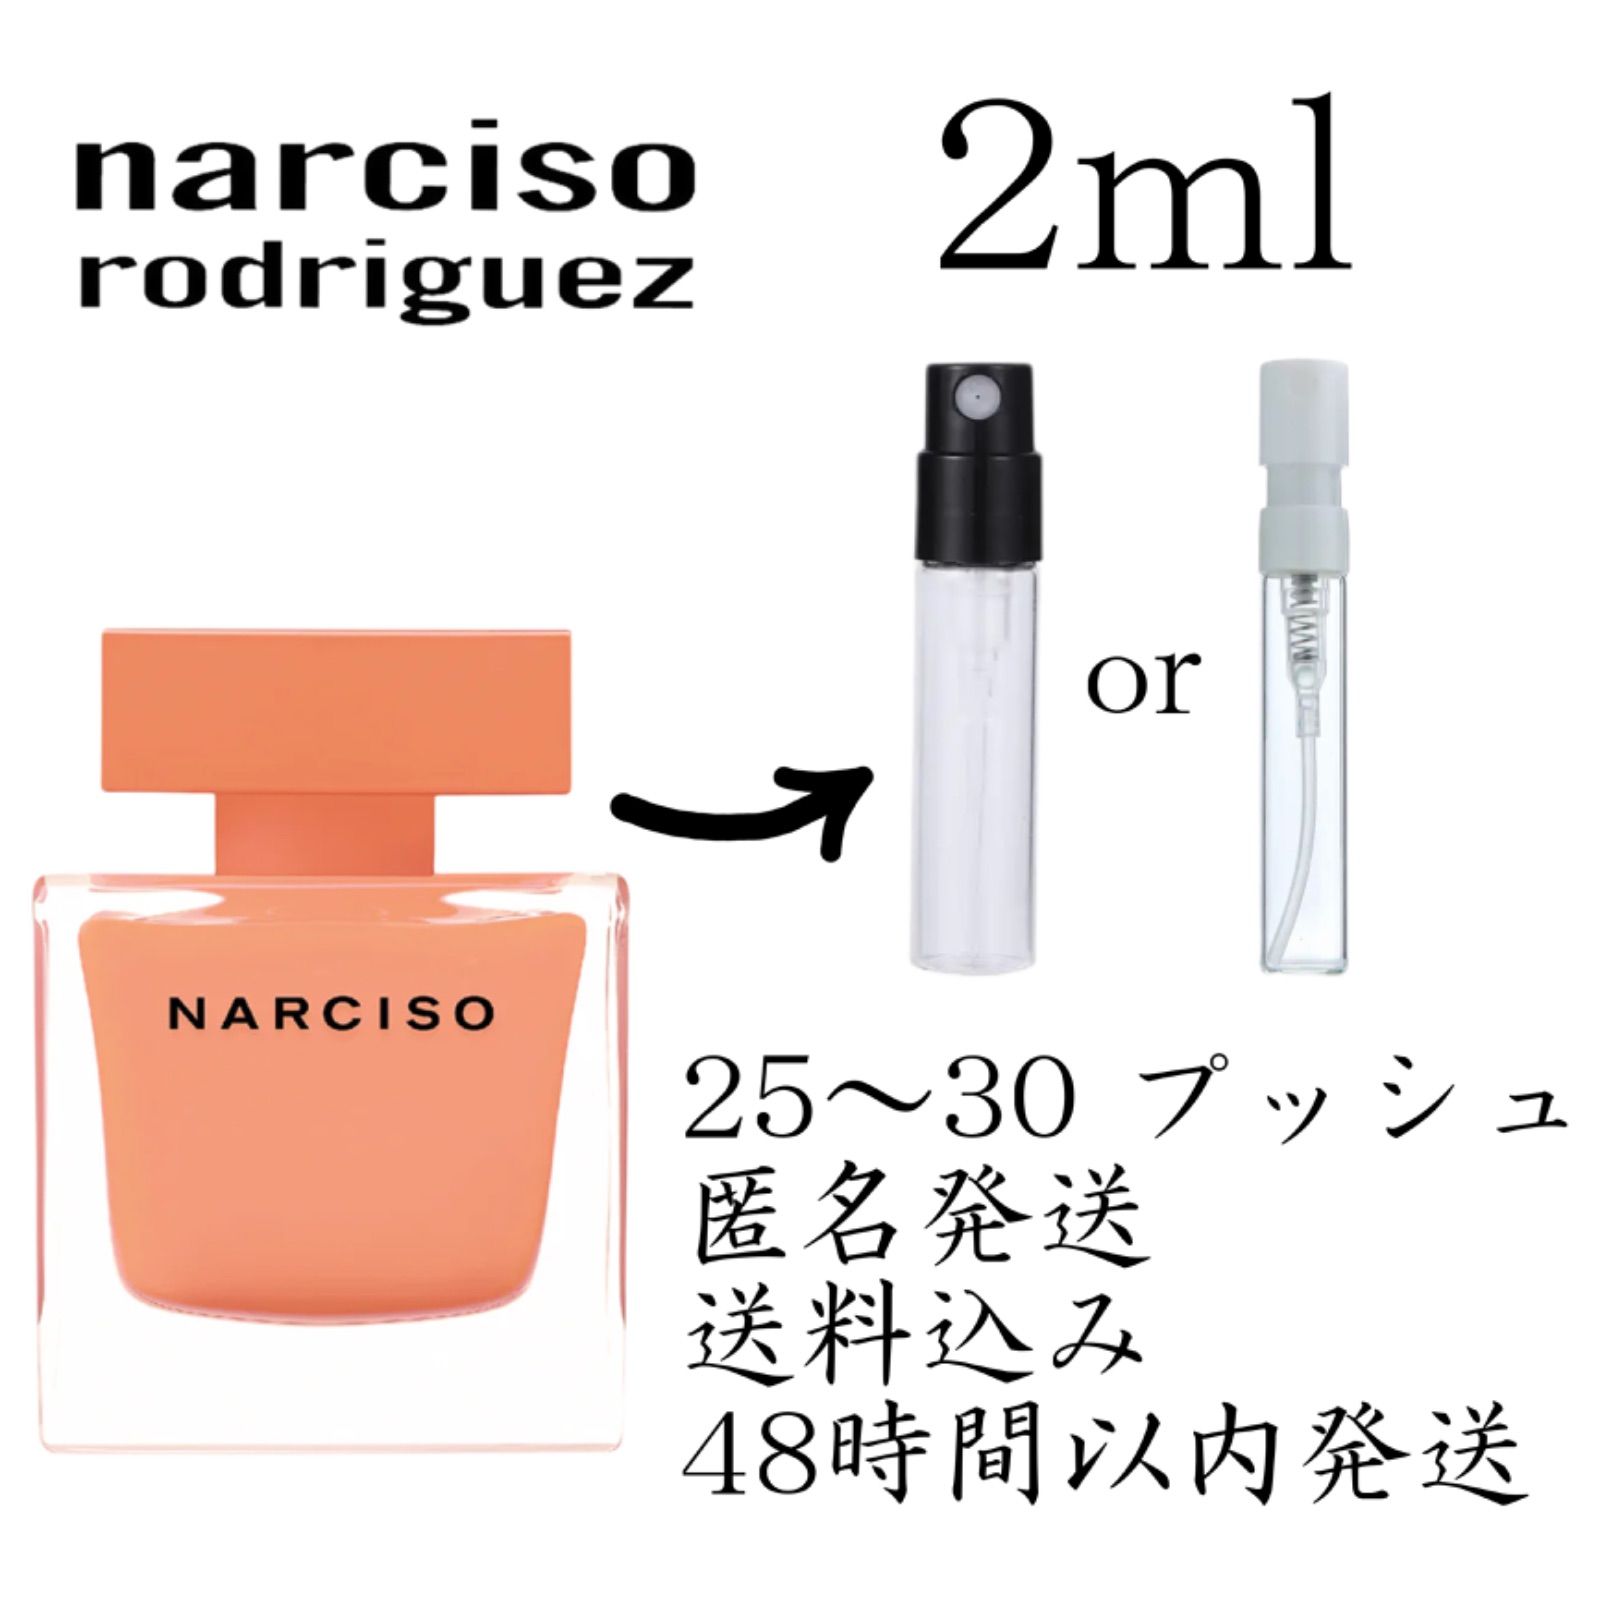 新品 お試し 香水 narciso rodriguez AMBRÉE ナルシソロドリゲス